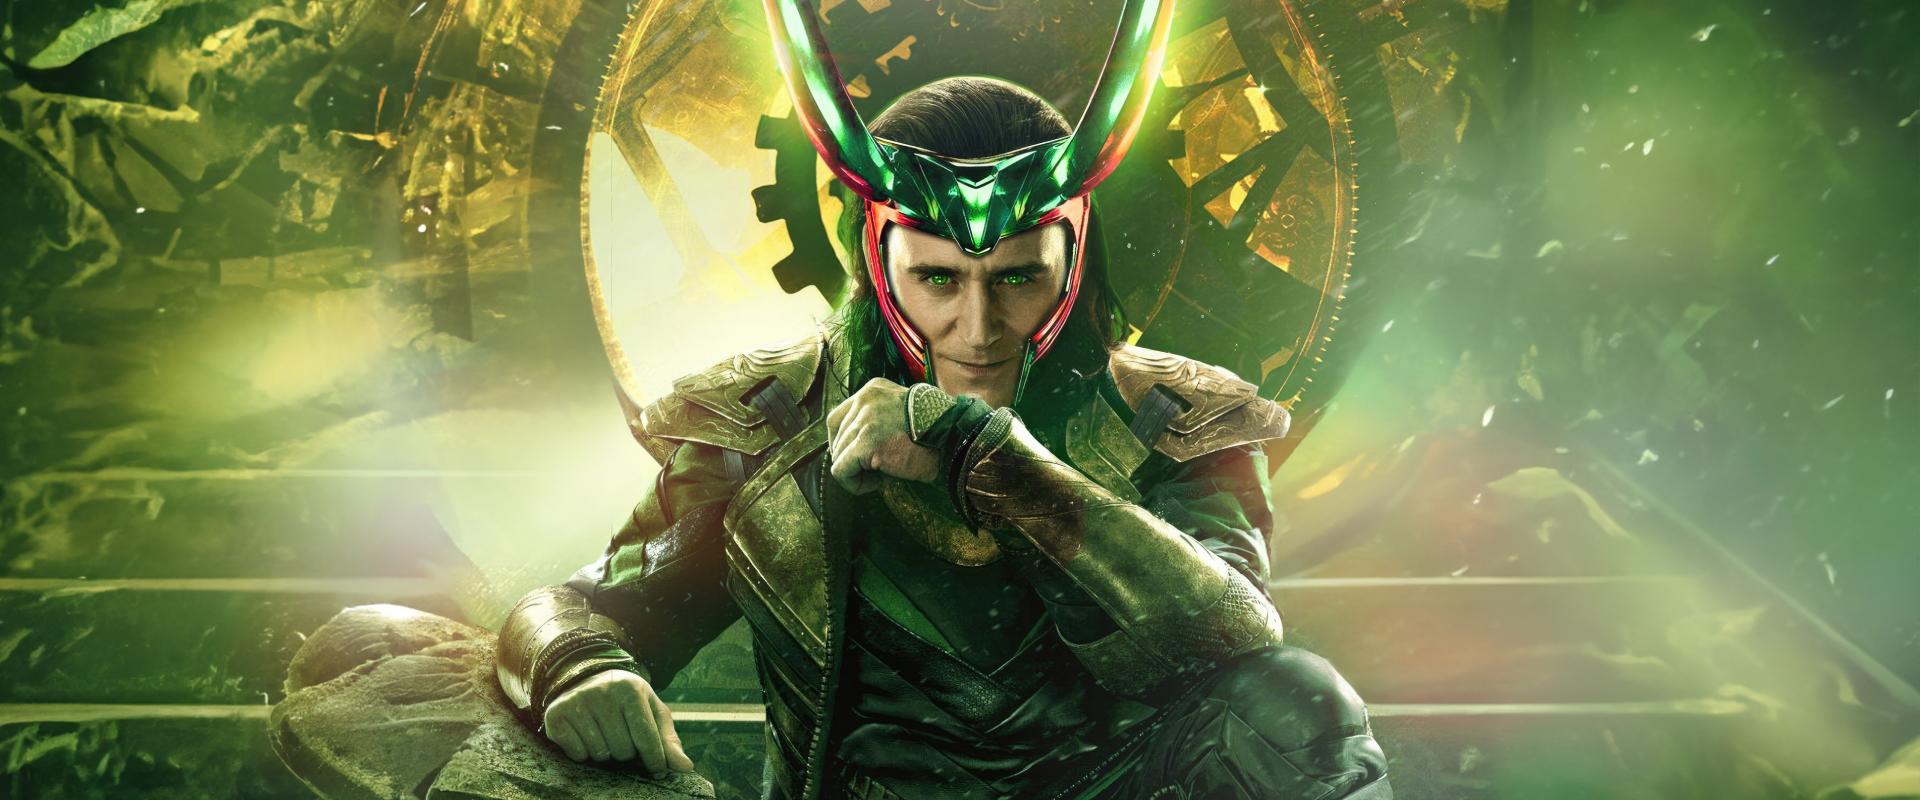 Hamarosan Loki is tiszteletét teszi a Fortnite-ban